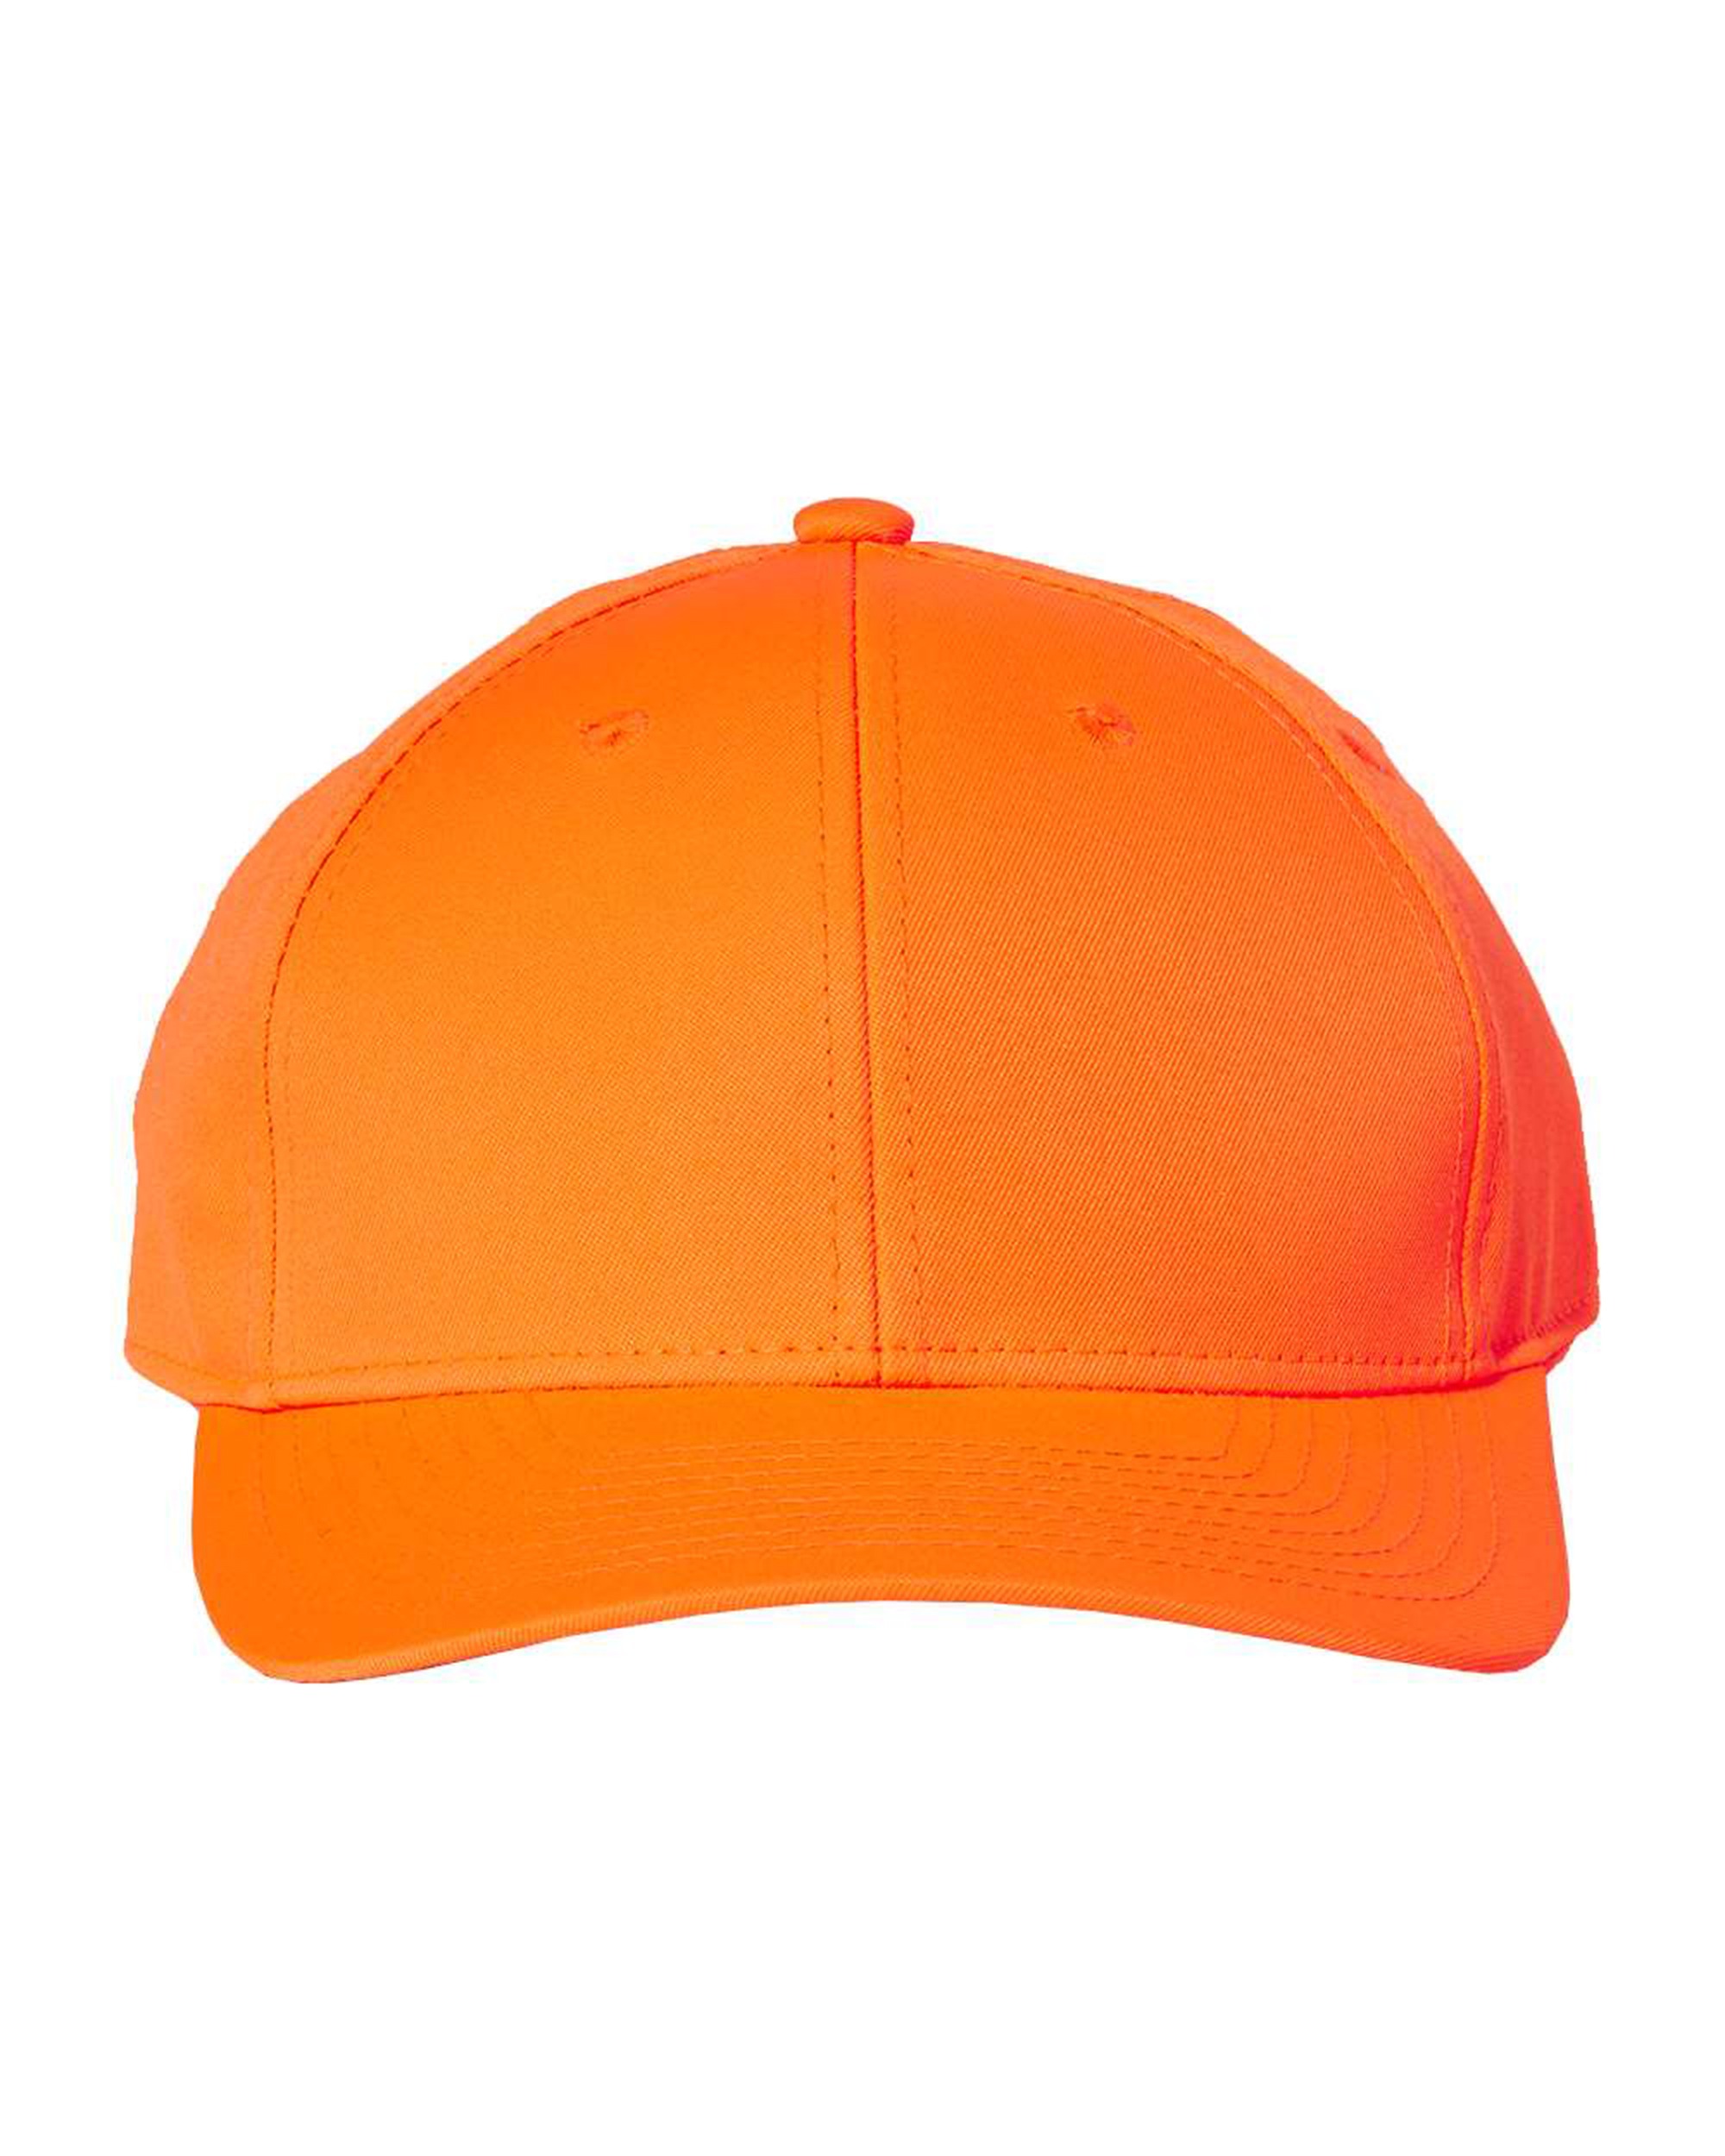 Outdoor Cap 301IS Hi-Vis Solid Snap Back Hat